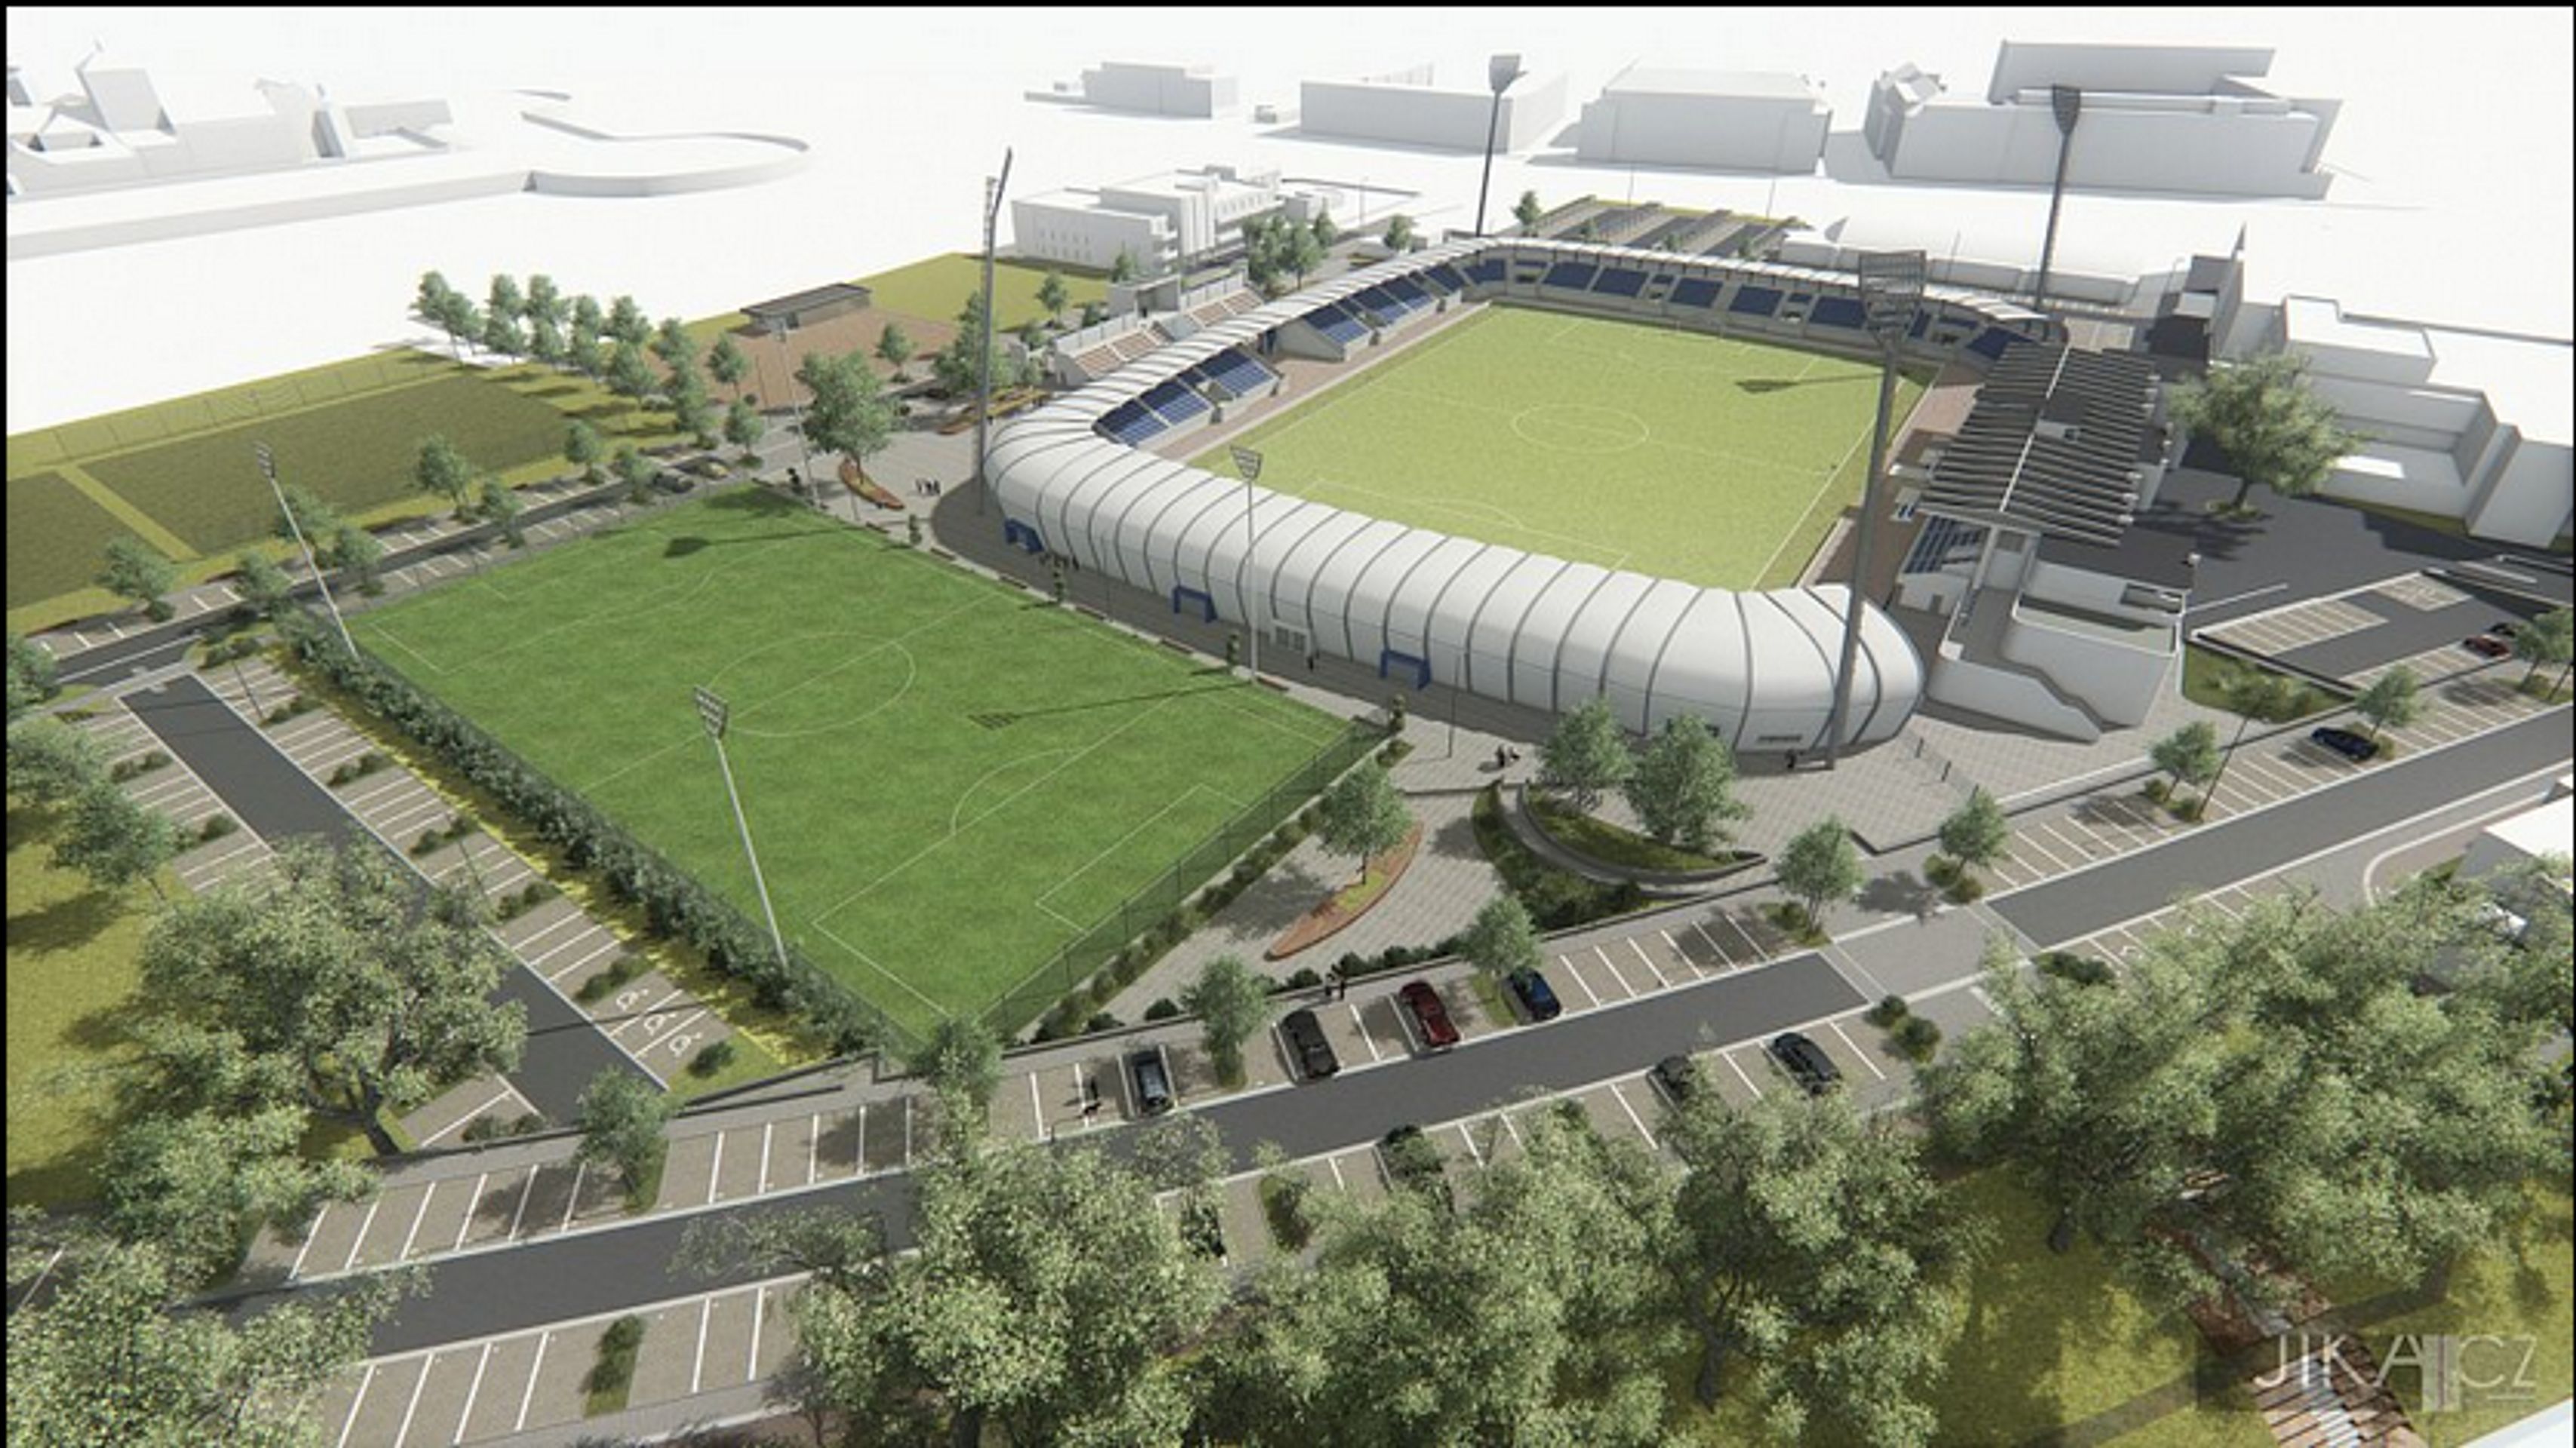 Takhle by měl vypadat nový fotbalový stadion v Pardubicích - GALERIE: Vizualizace nového stadionu v Pardubicích (1/4)